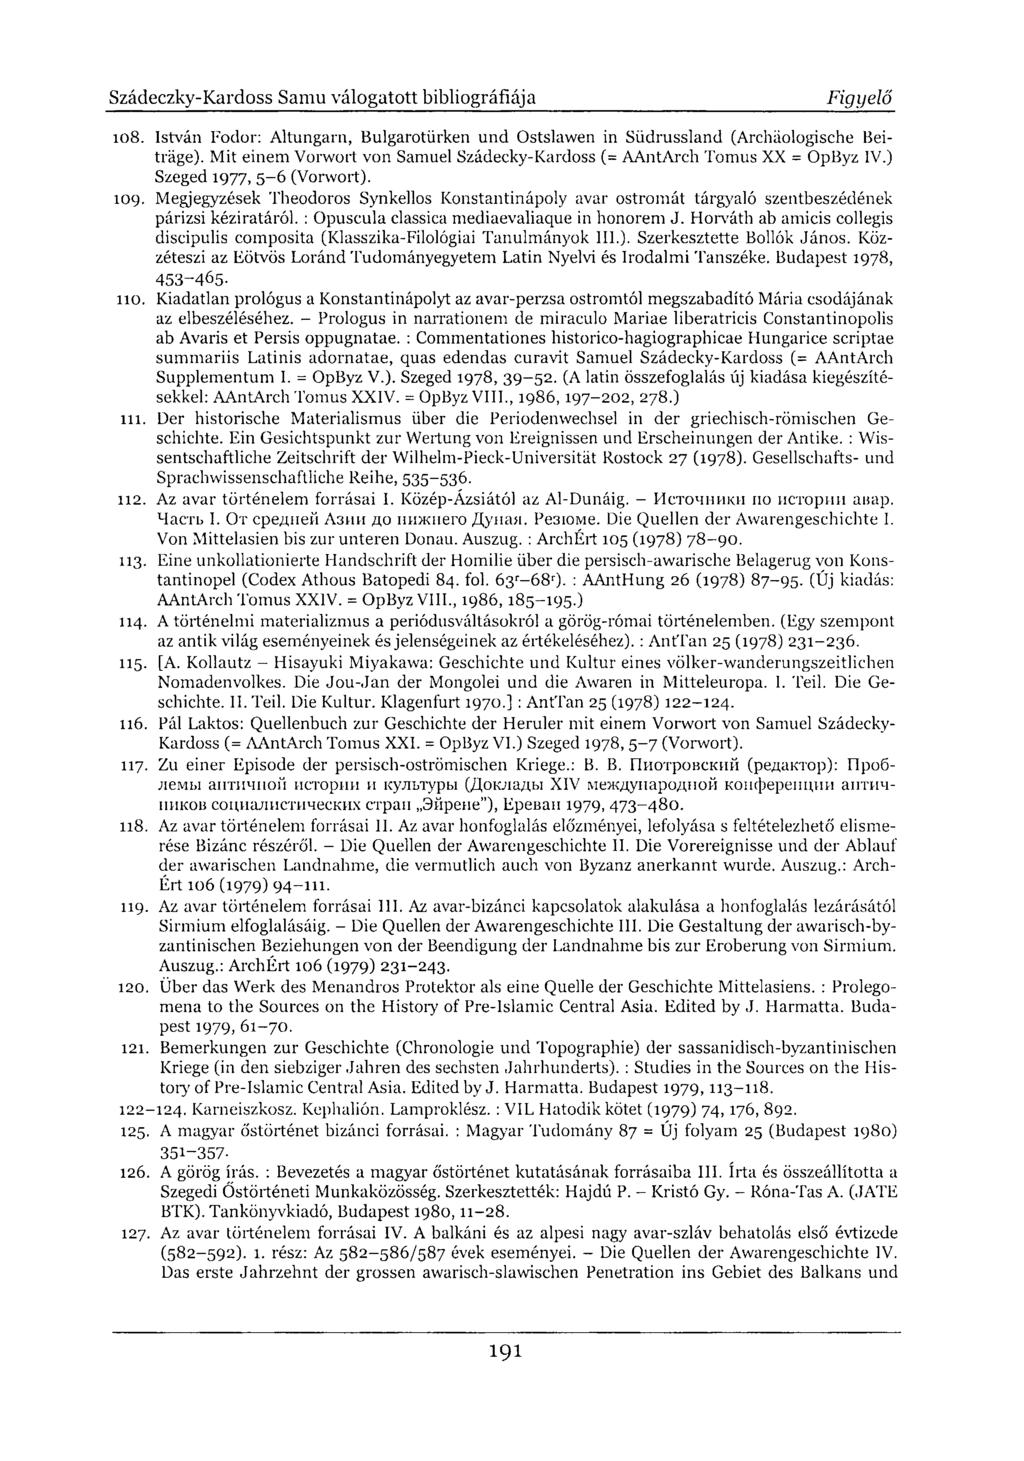 108. István Fodor: Altungarn, Bulgarotürken und Ostslawen in Südrussland (Archäologische Beiträge). Mit einem Vorwort von Samuel Szádecky-Kardoss (= AAntArch Tomus XX = OpByz IV.